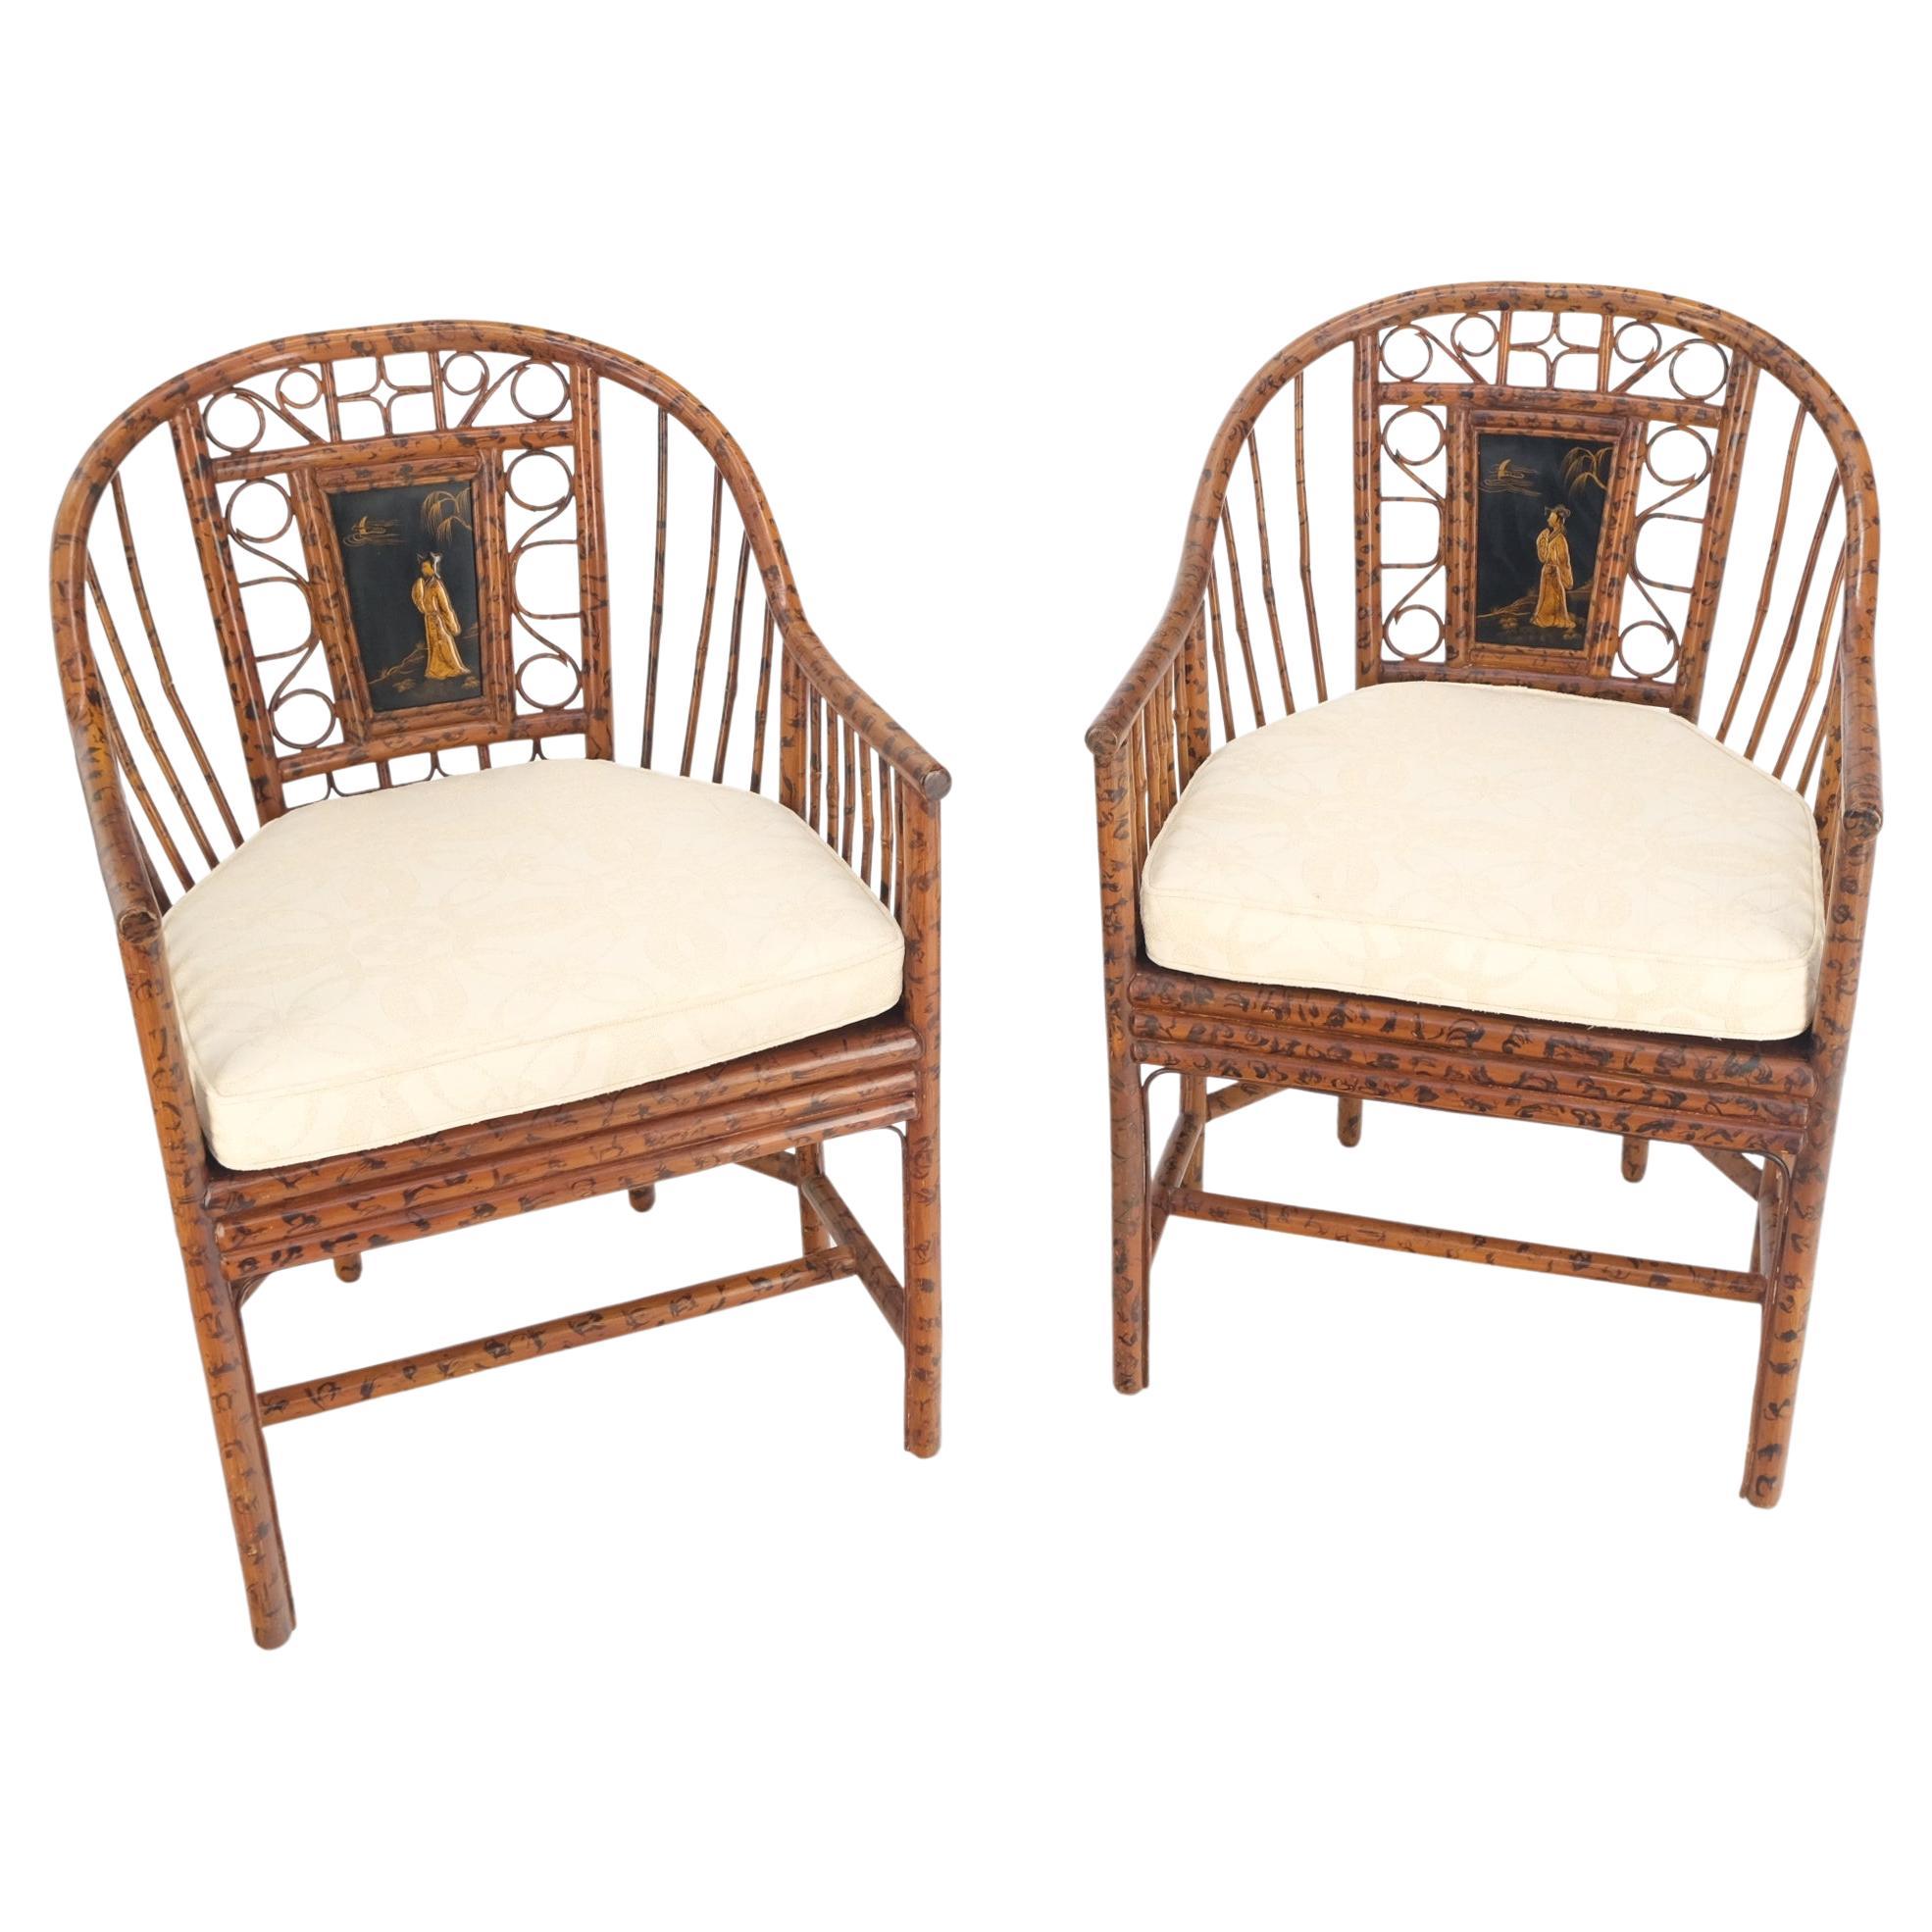 Paar verbrannte Bambus-Stühle mit asiatischen Motiven Plakette, dekoriert, Lounge, Kaminsims, Rohrstühle